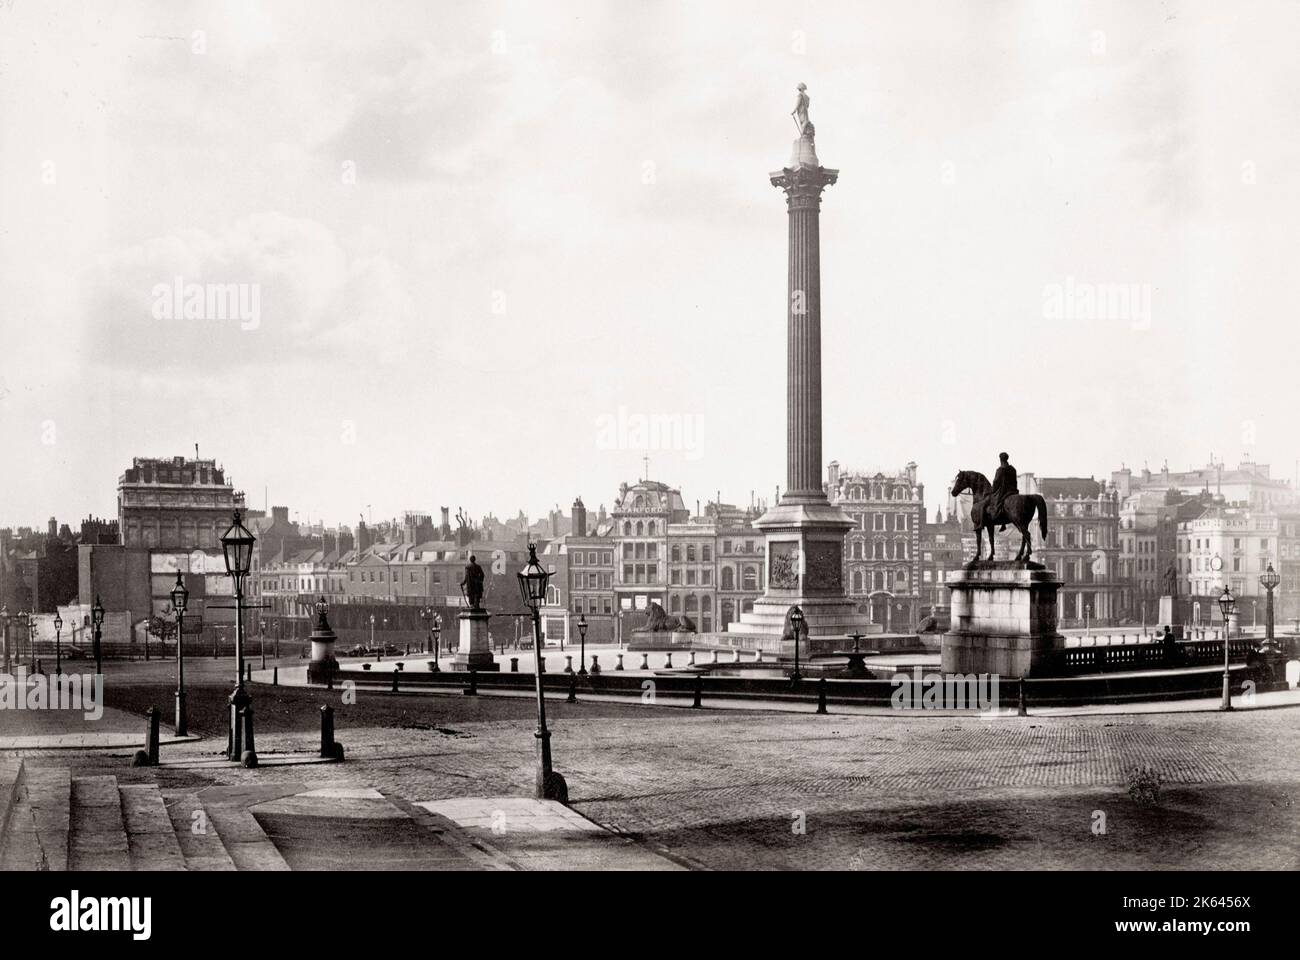 Photographie du XIXe siècle : Trafalgar Square, Londres Banque D'Images